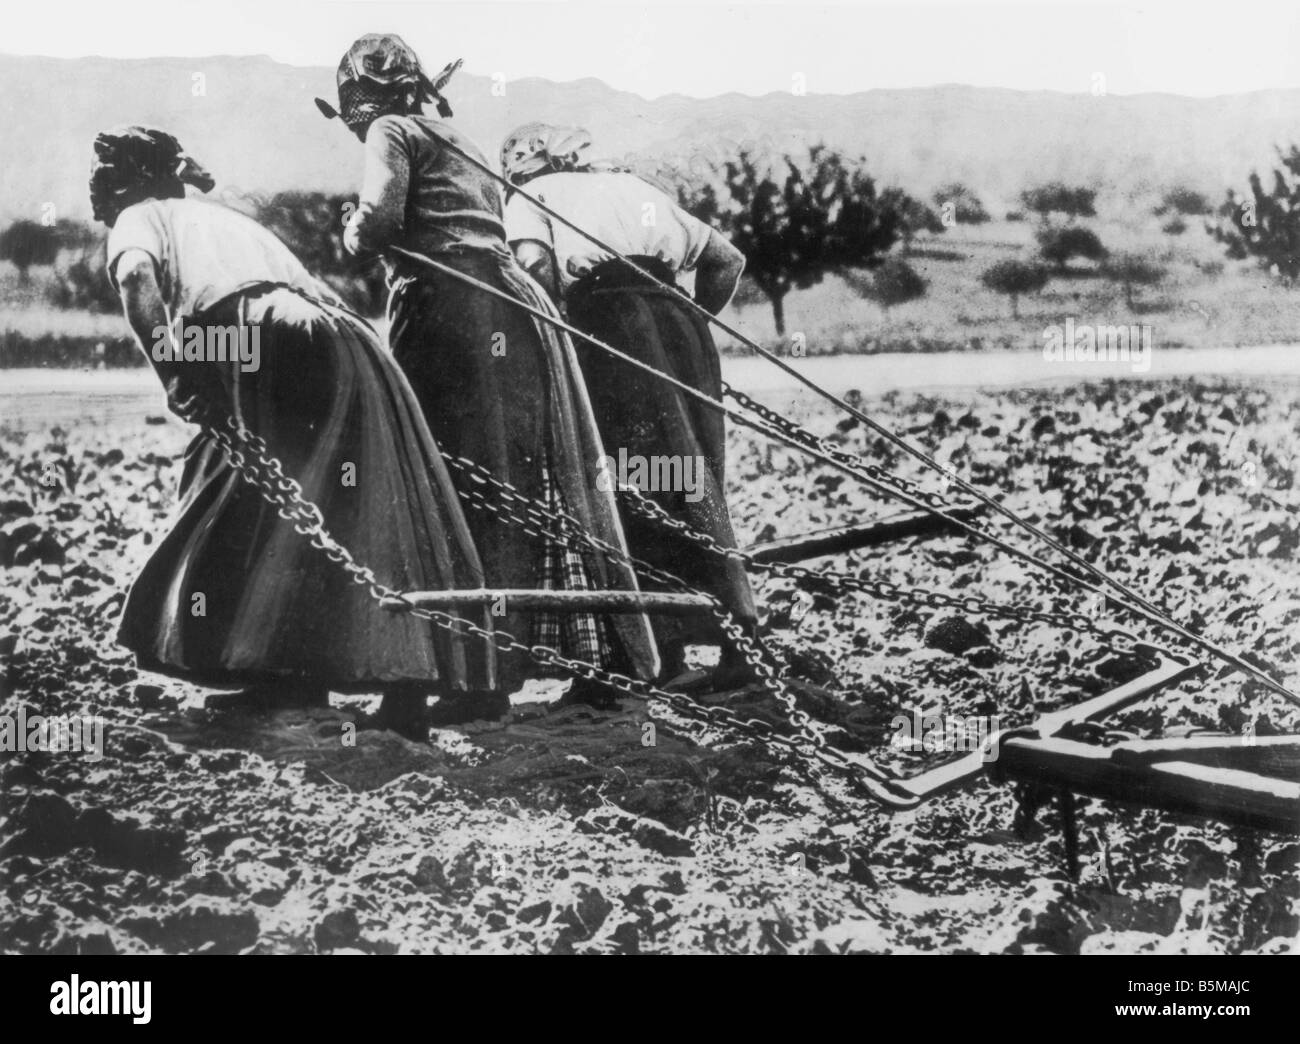 Le donne francesi tirando un aratro WWI storia prima guerra mondiale le economie di guerra francia - francese i lavoratori agricoli tirando un aratro foto senza data Foto Stock